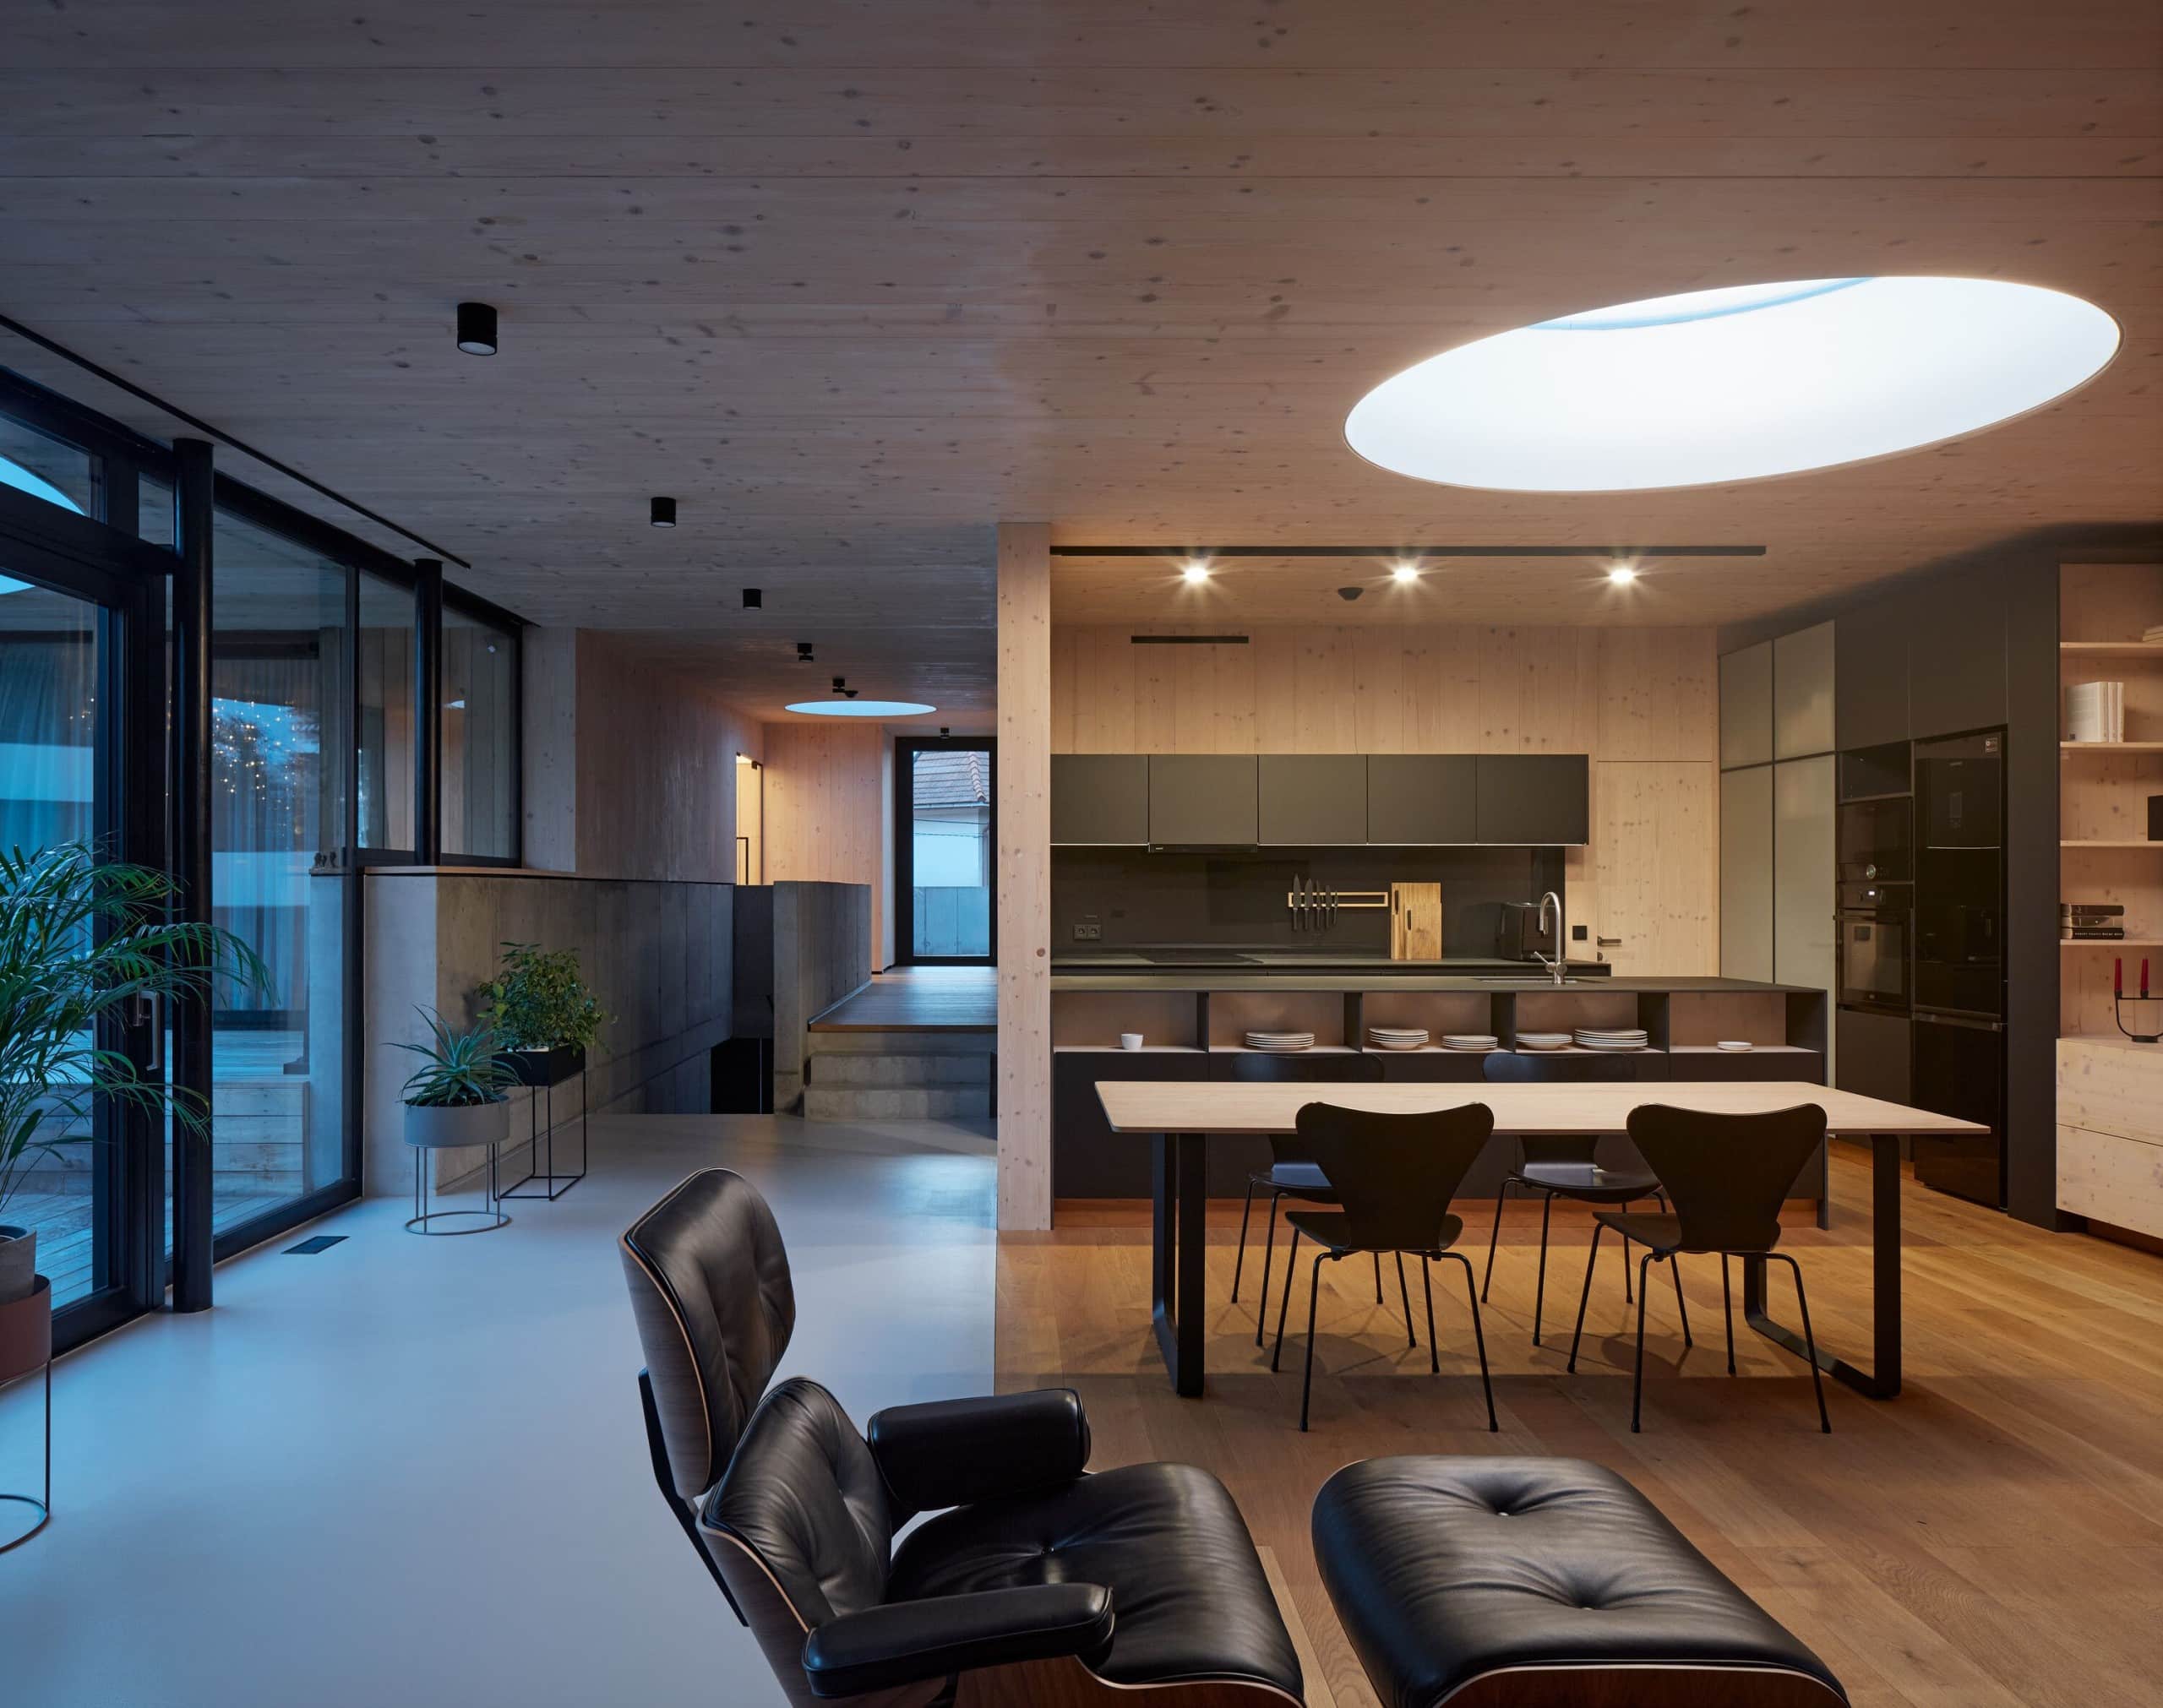 Wohnraum: Fensterfront, Essbereich mit Küche und Tisch, sessel, Treppen, große, runde Lampe